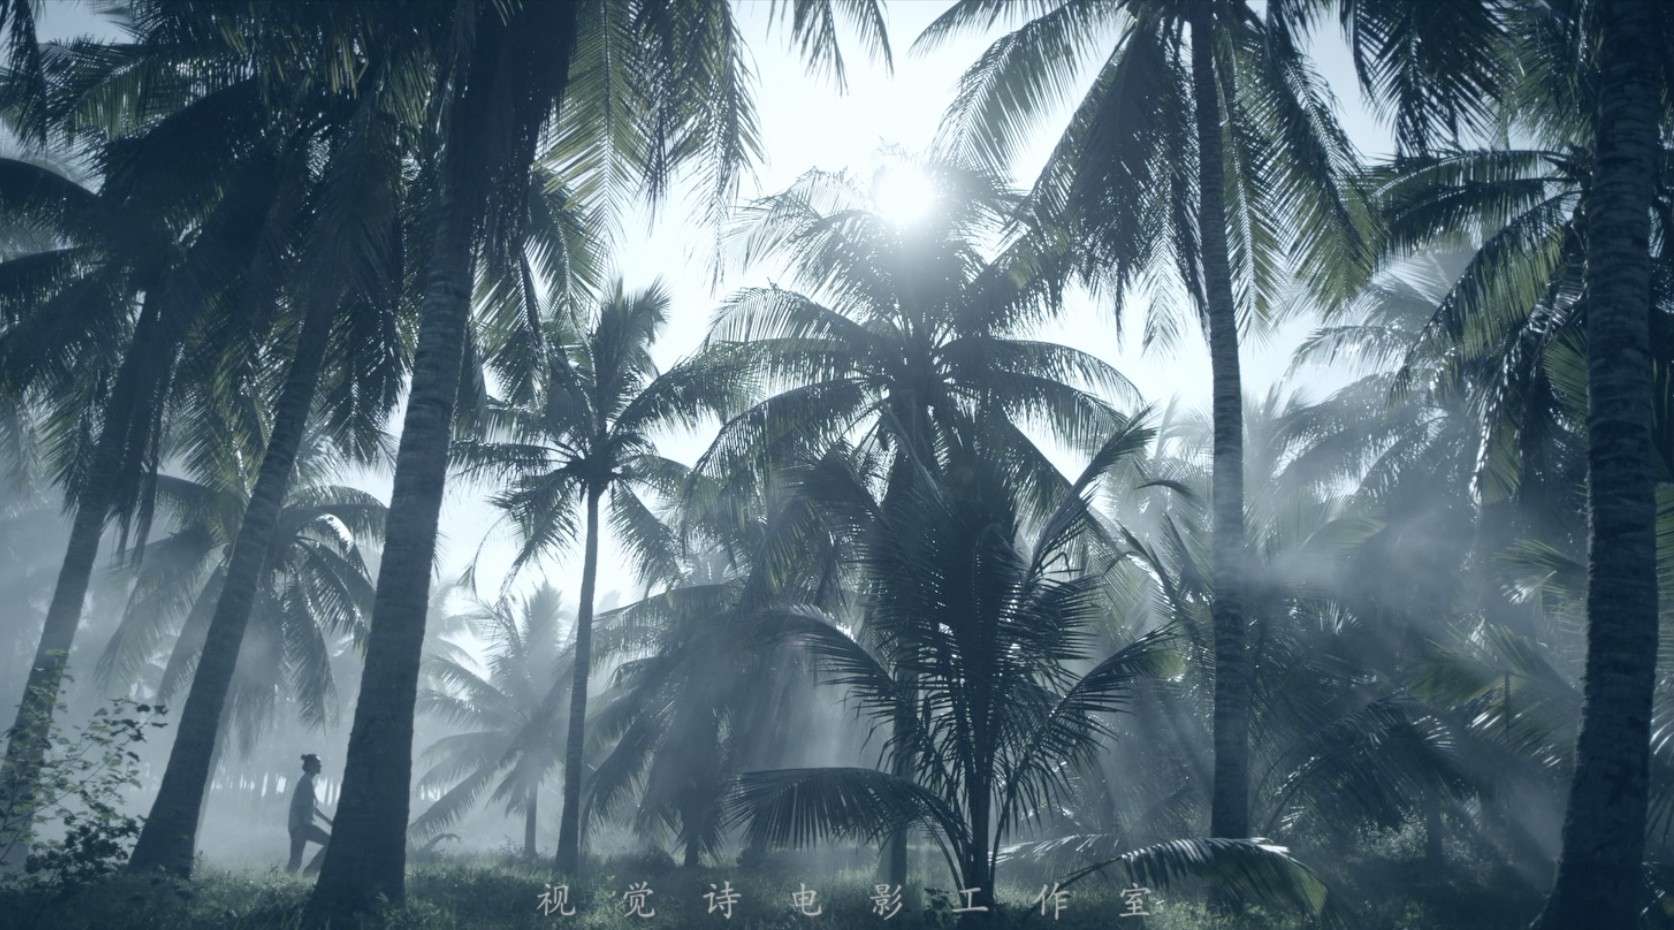 《椰子洲岛-乘物游心》——视觉诗电影工作室